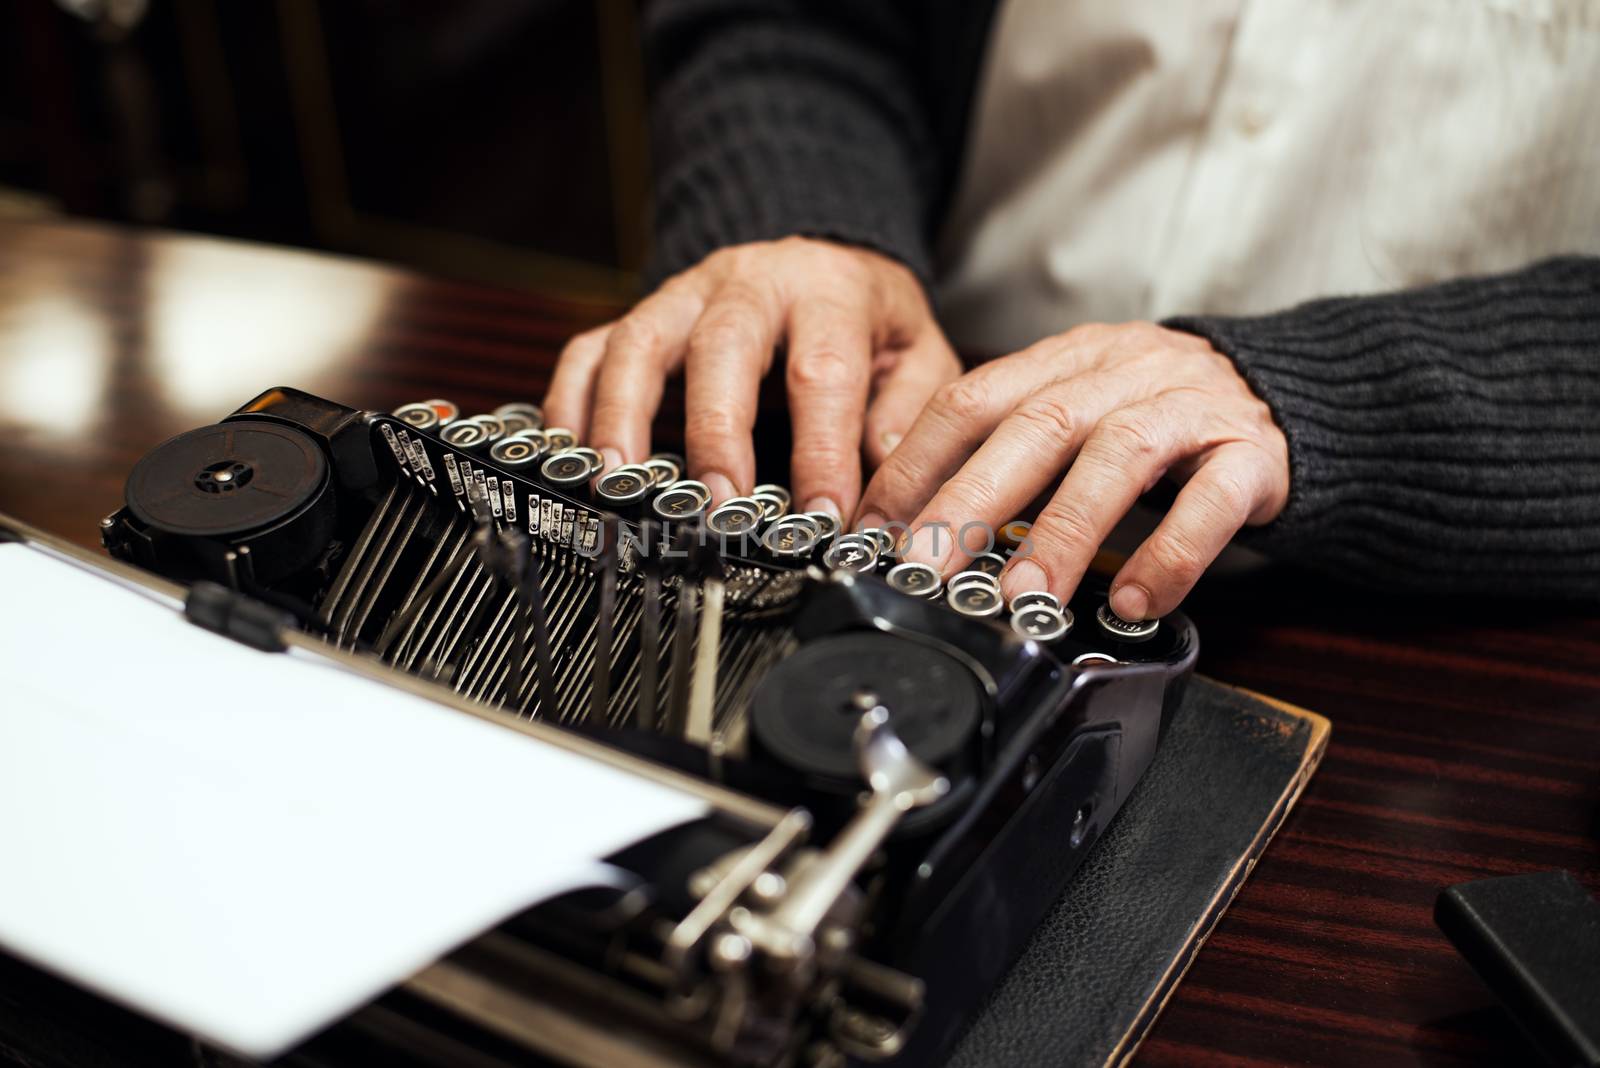 Typewriter by MilanMarkovic78